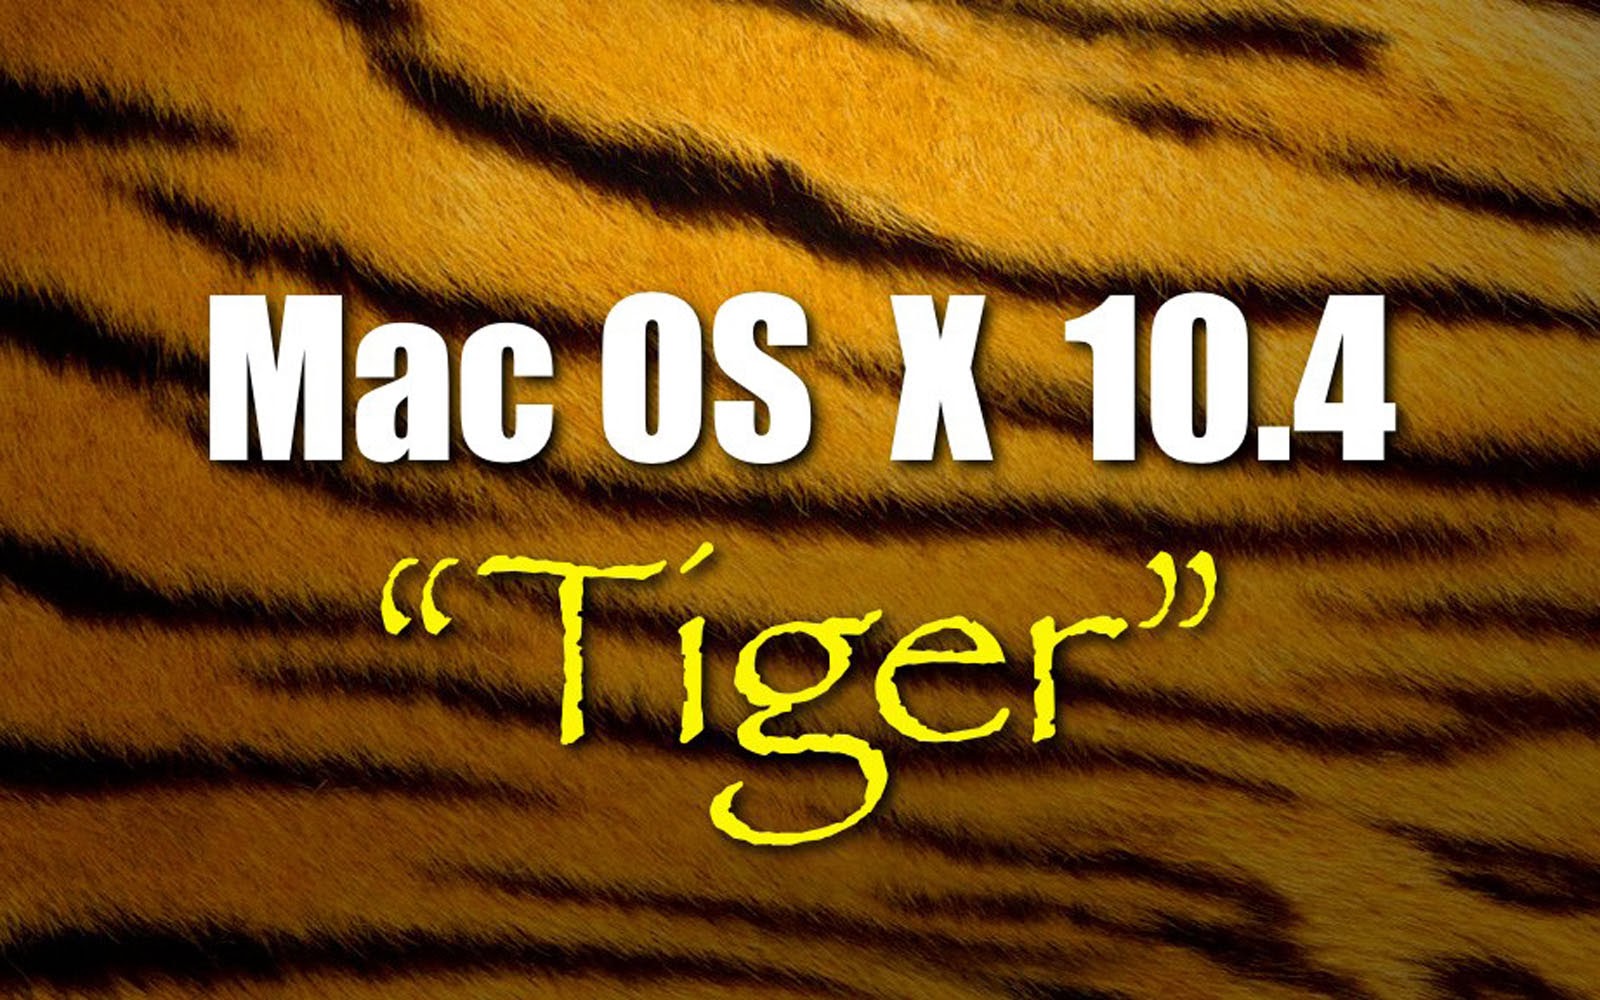 Wallpaper Mac Os X Tiger